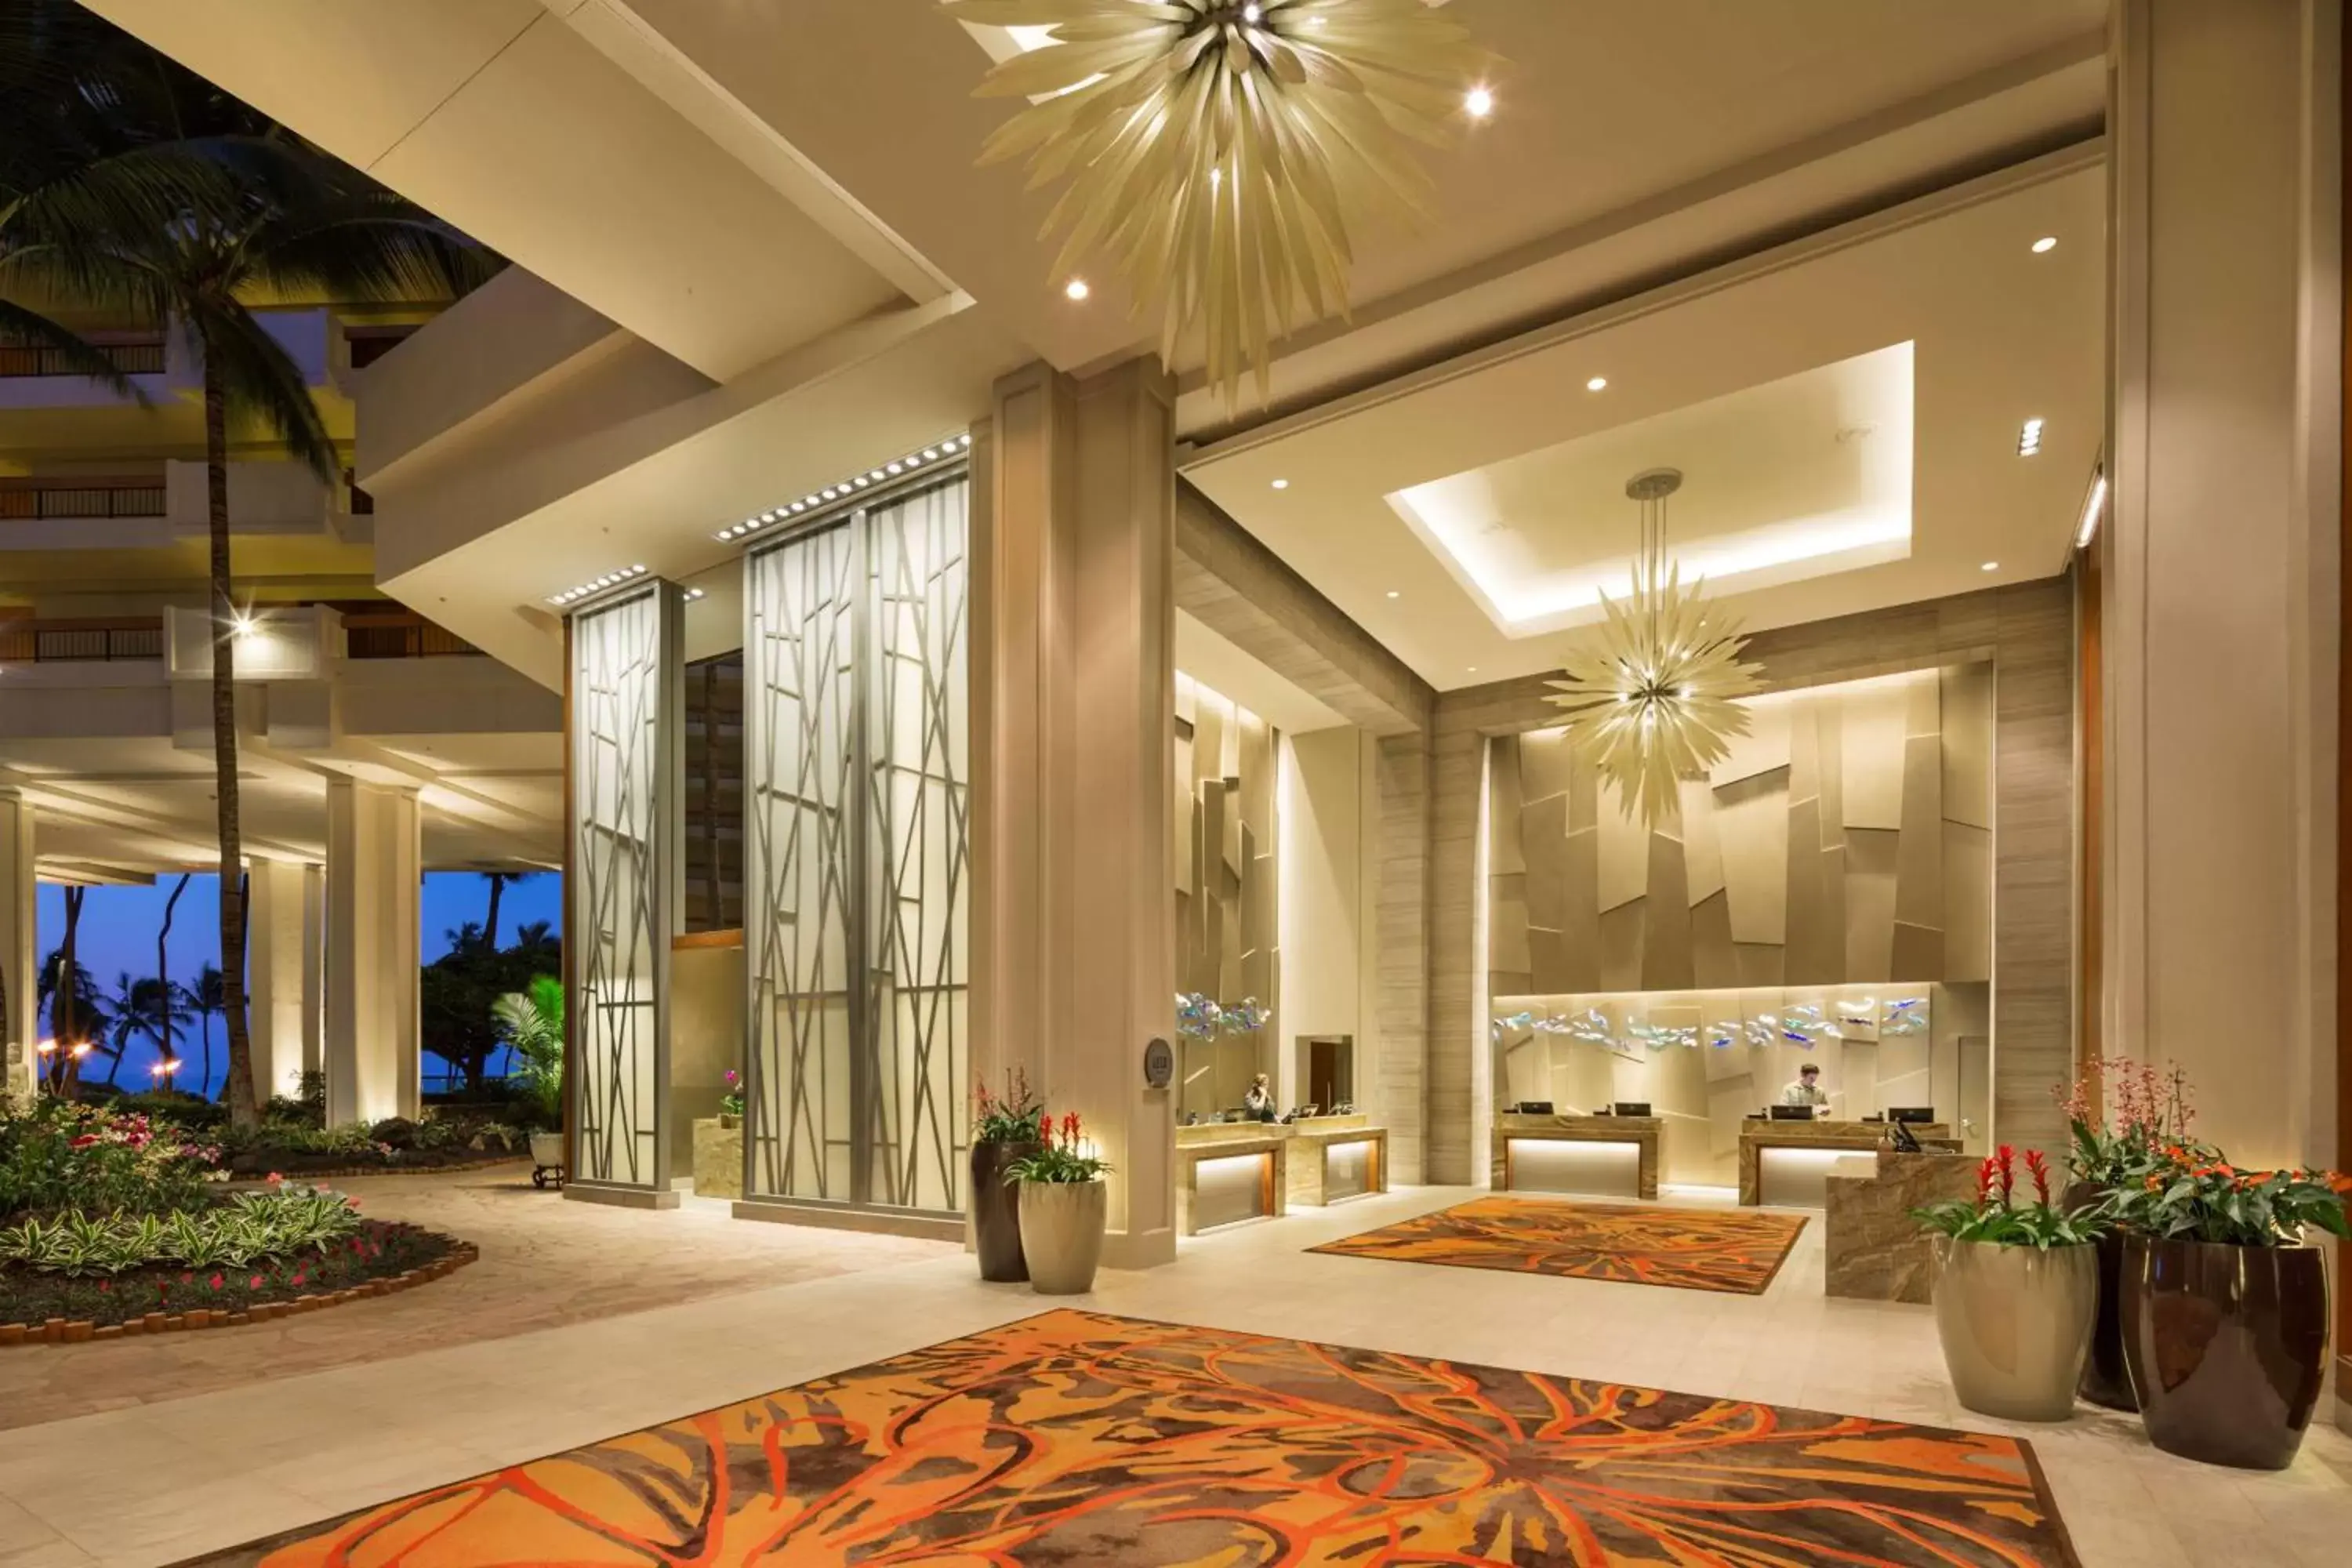 Lobby or reception in Hyatt Regency Maui Resort & Spa